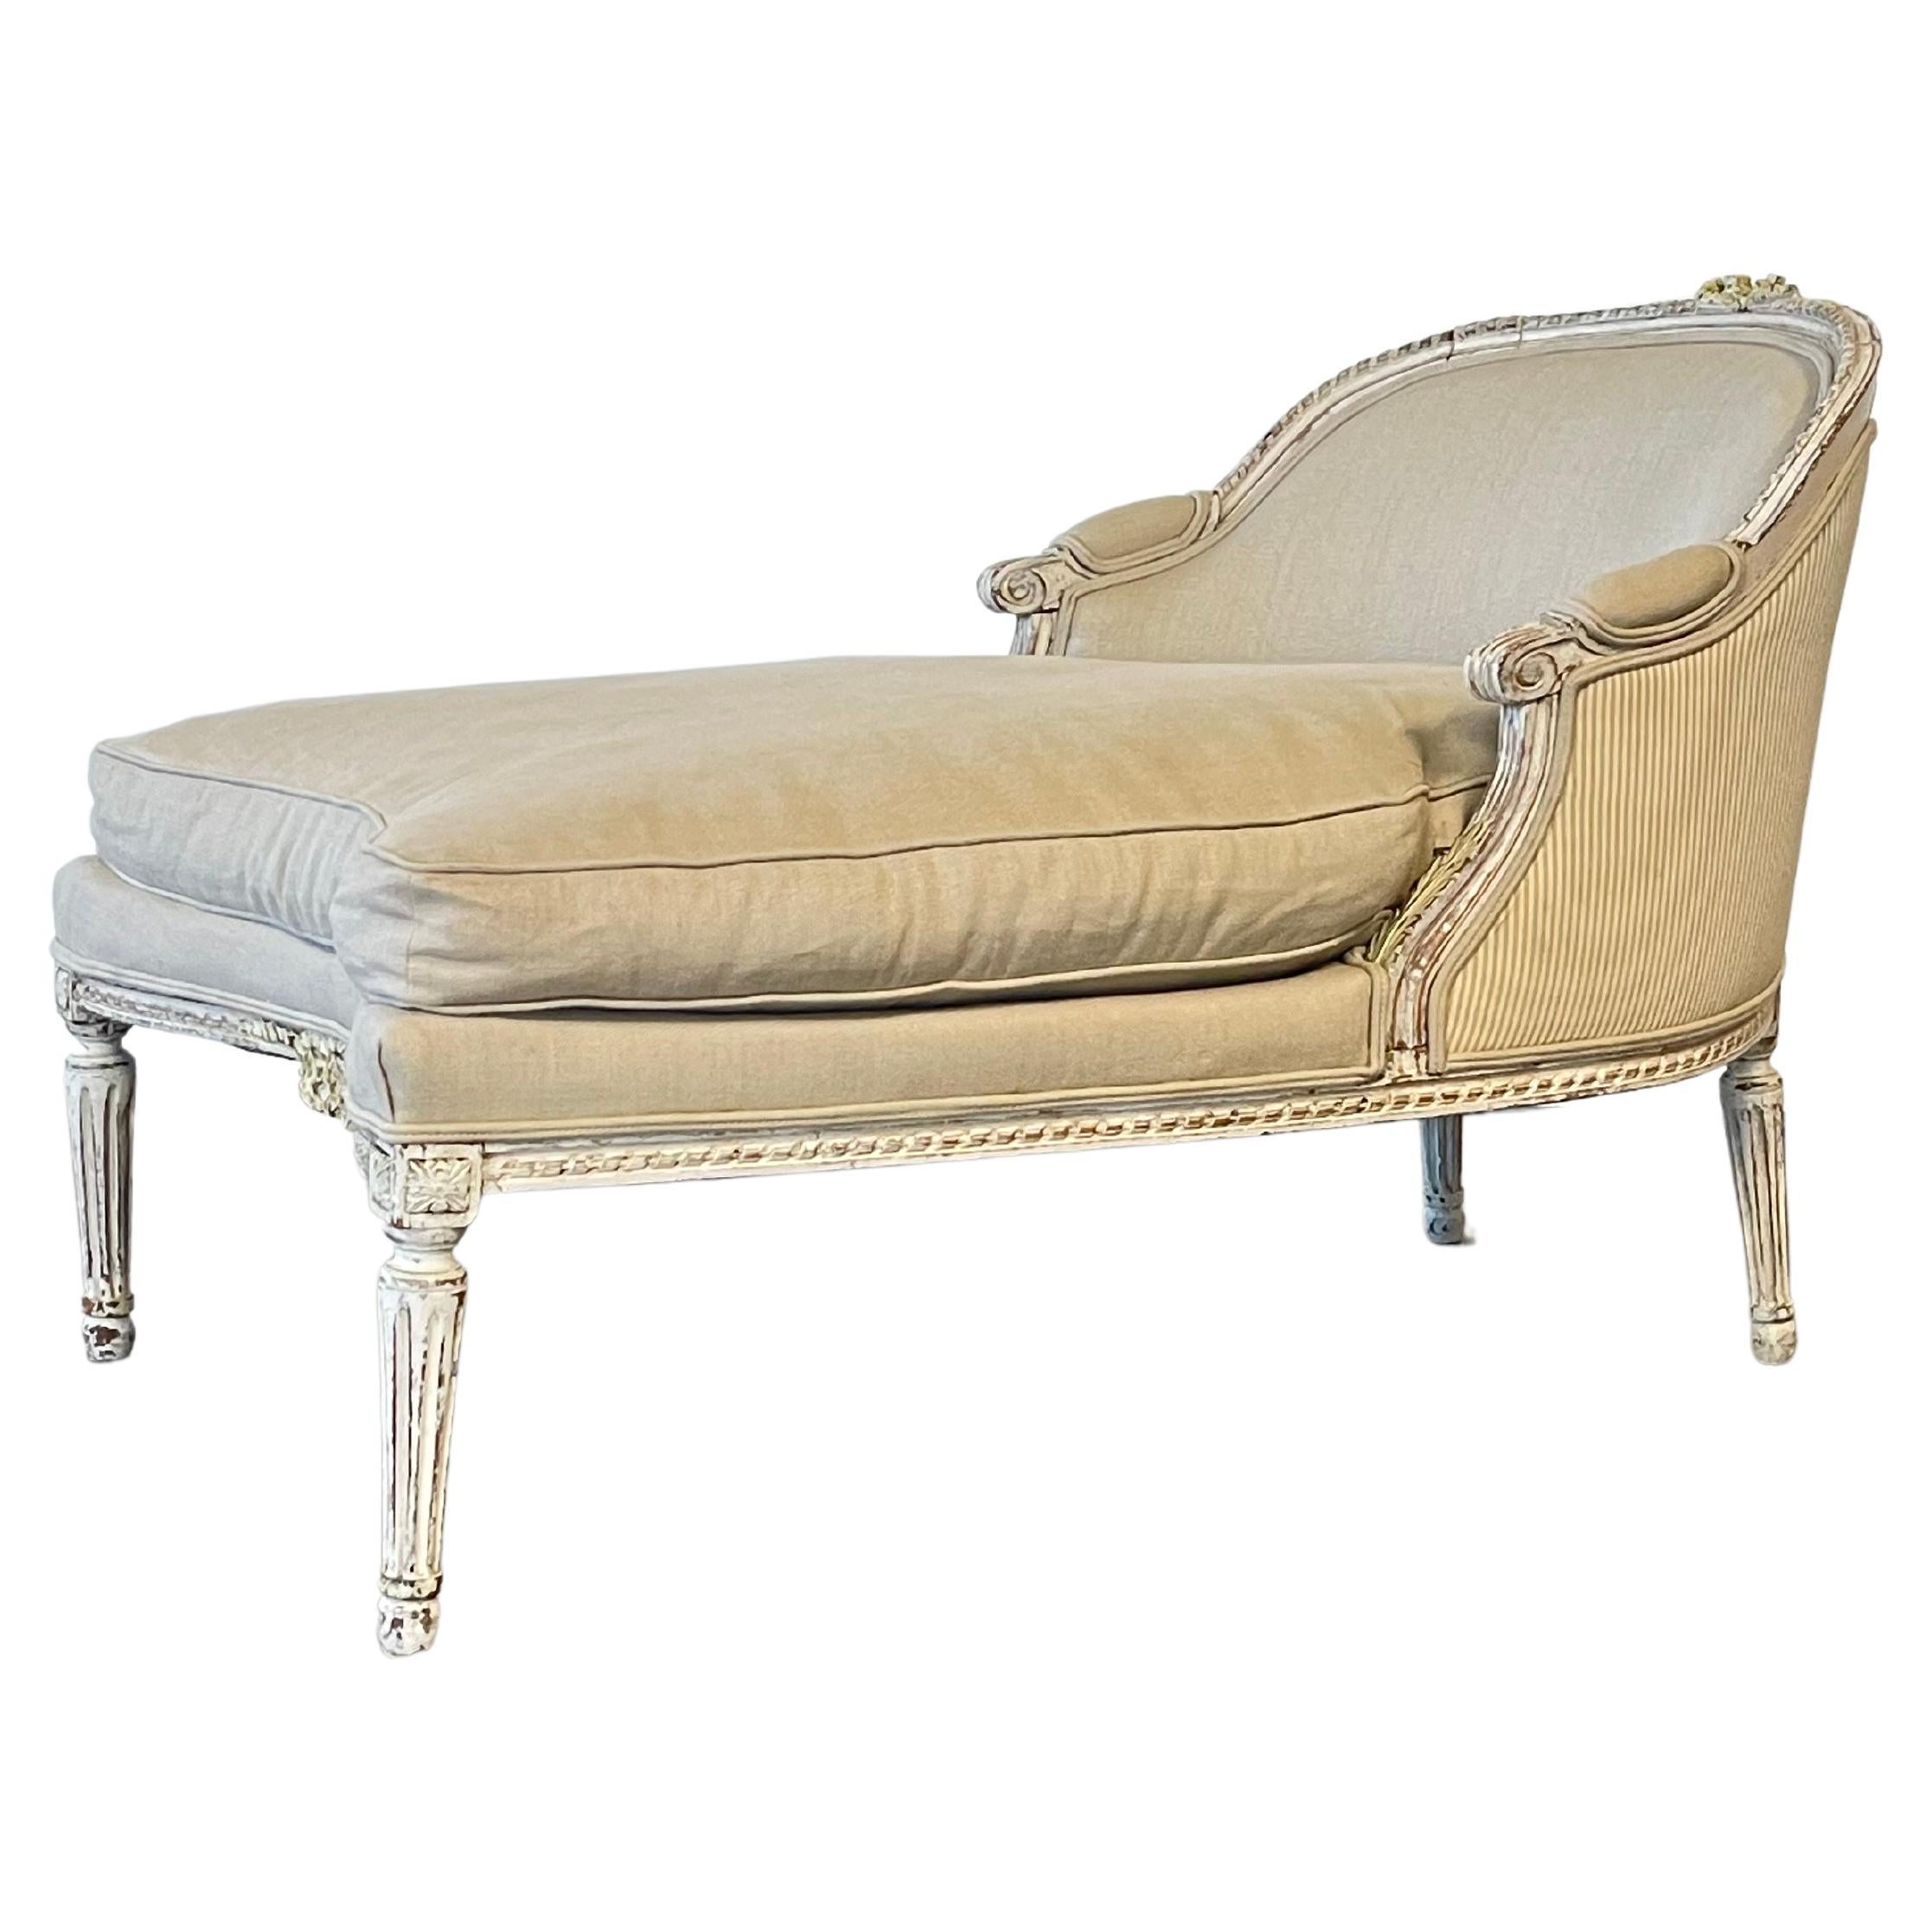 Magnifique chaise longue française Louis XVI  Tapissé d'un lin épais